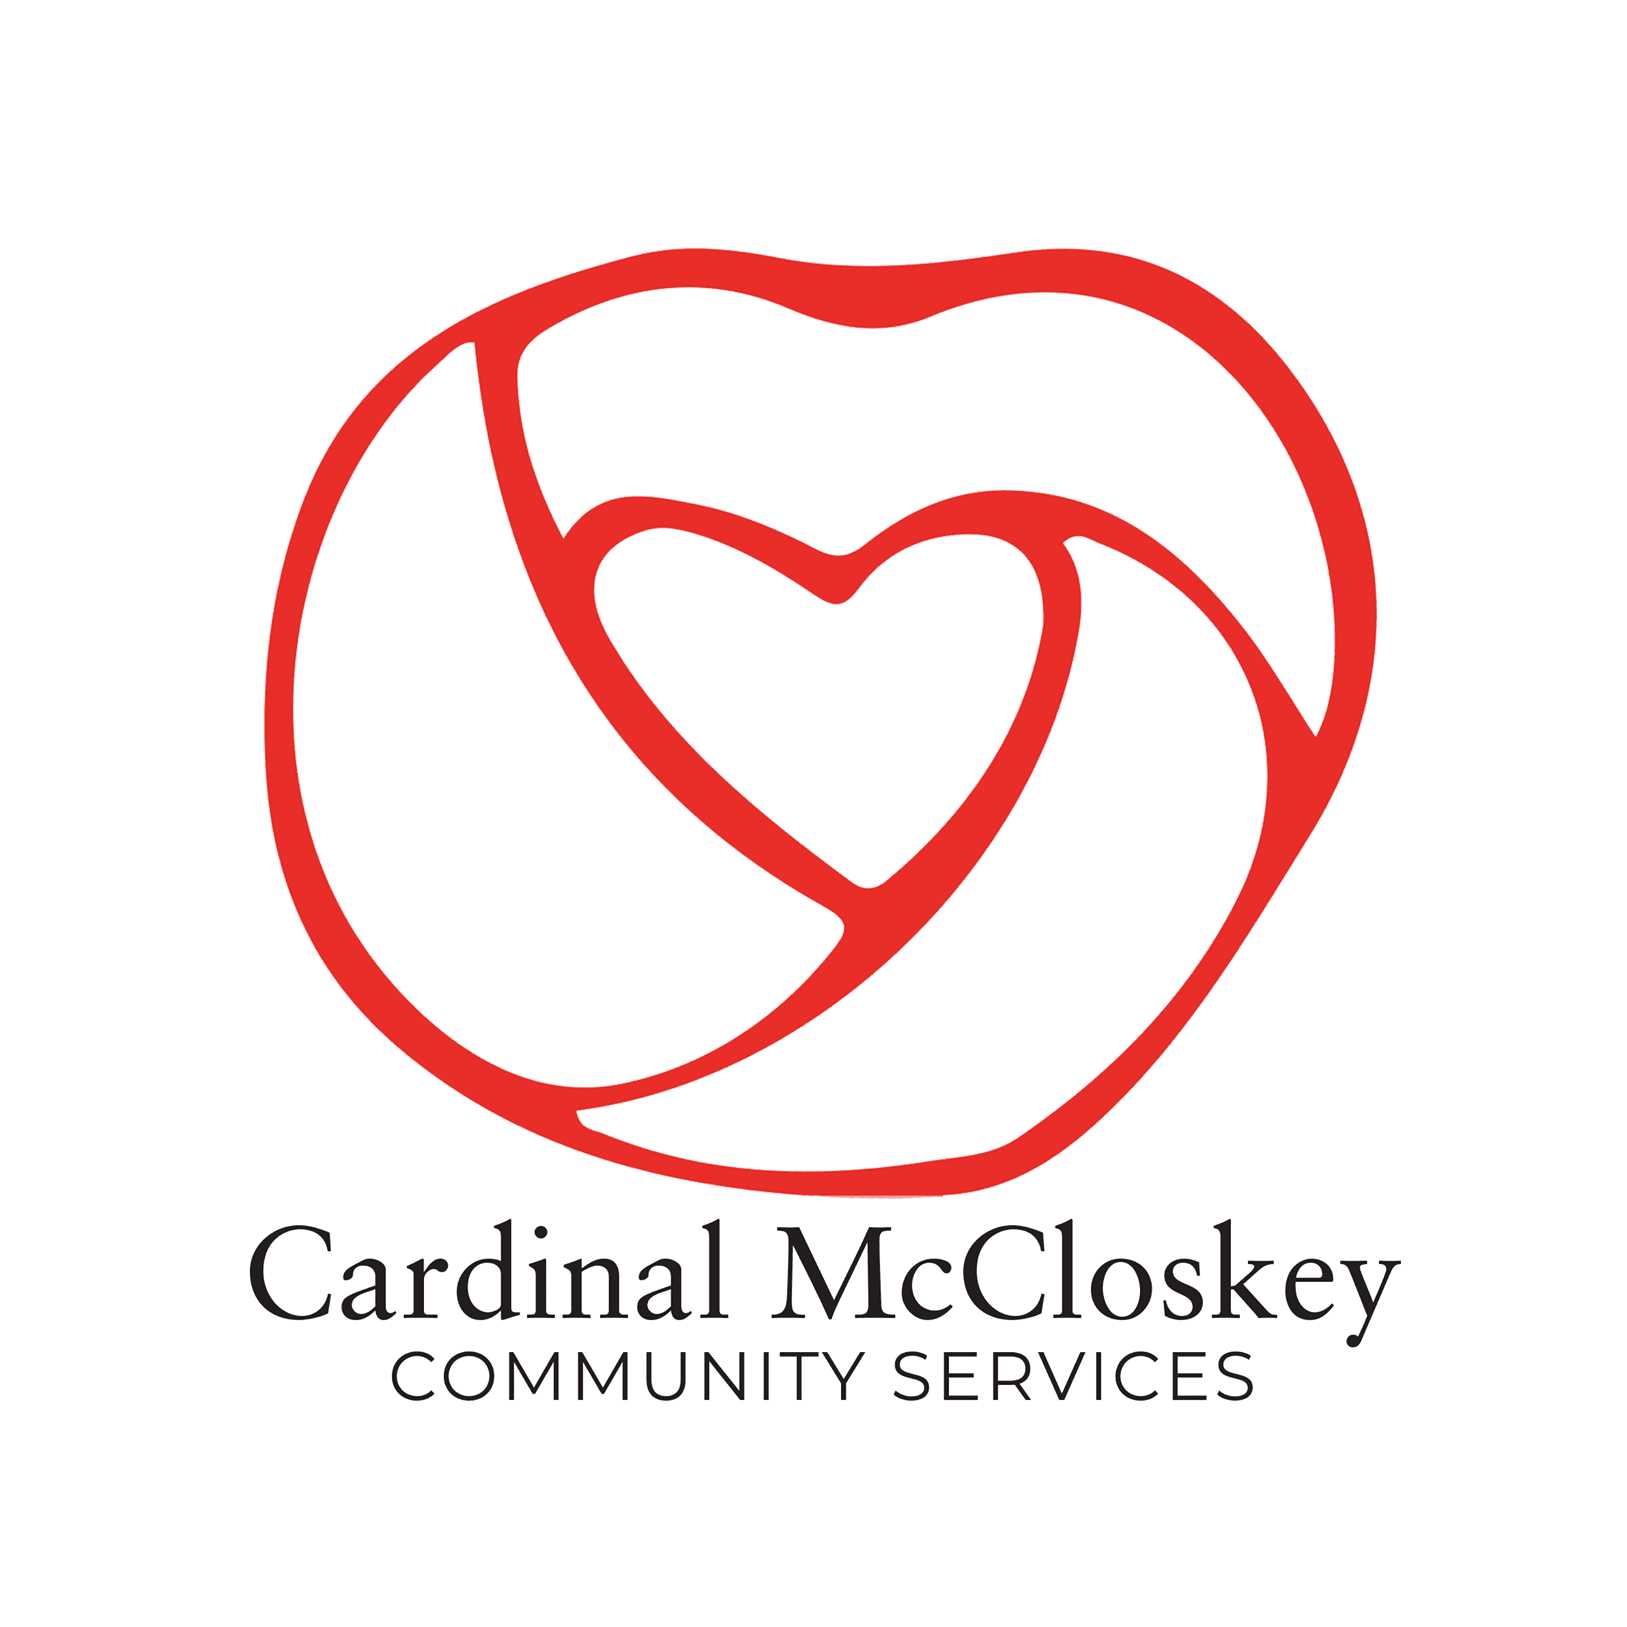 Cardinal Mccloskey Services Food pantry